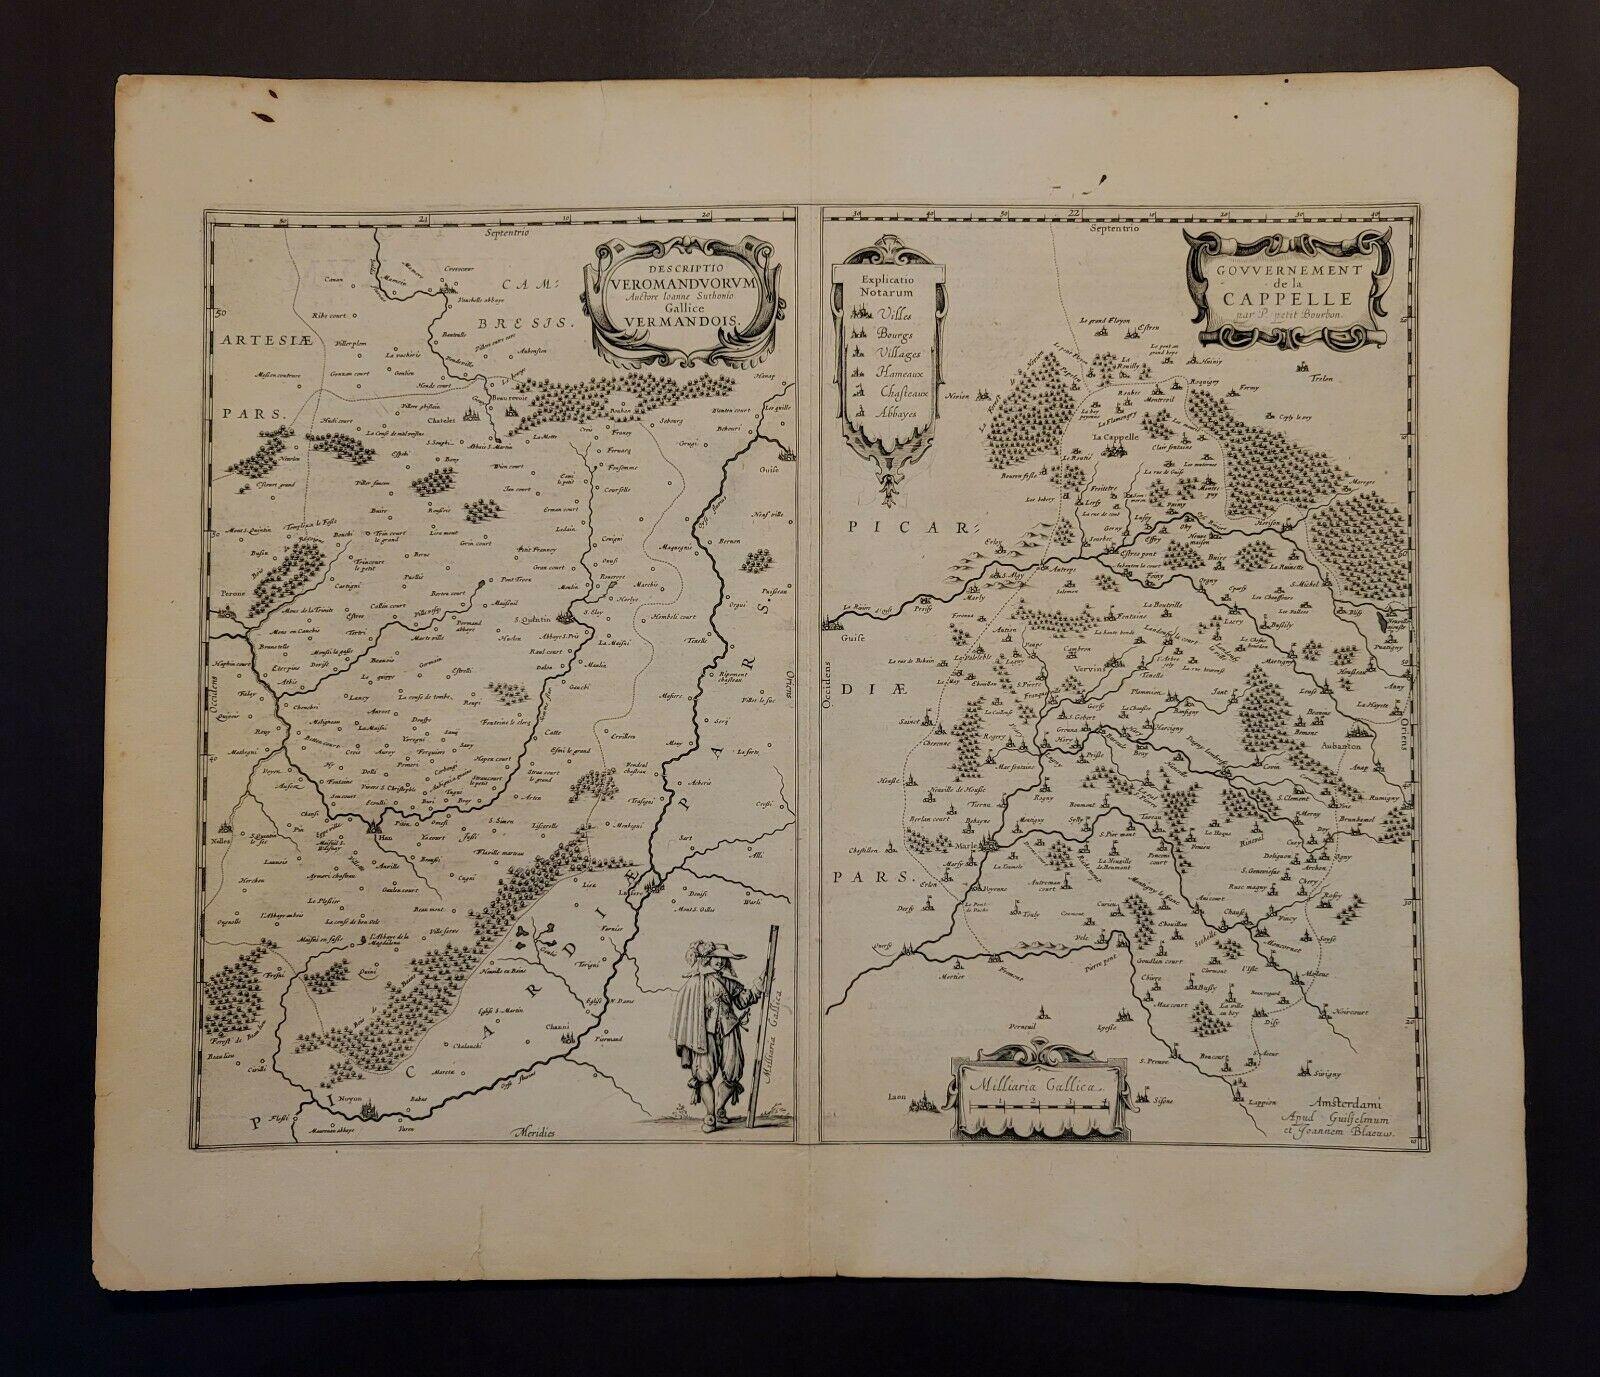 1657 Carte de Janssonius de 
Vermandois et Cappelle
 Ric.a004

Description : Carte ancienne de France intitulée 